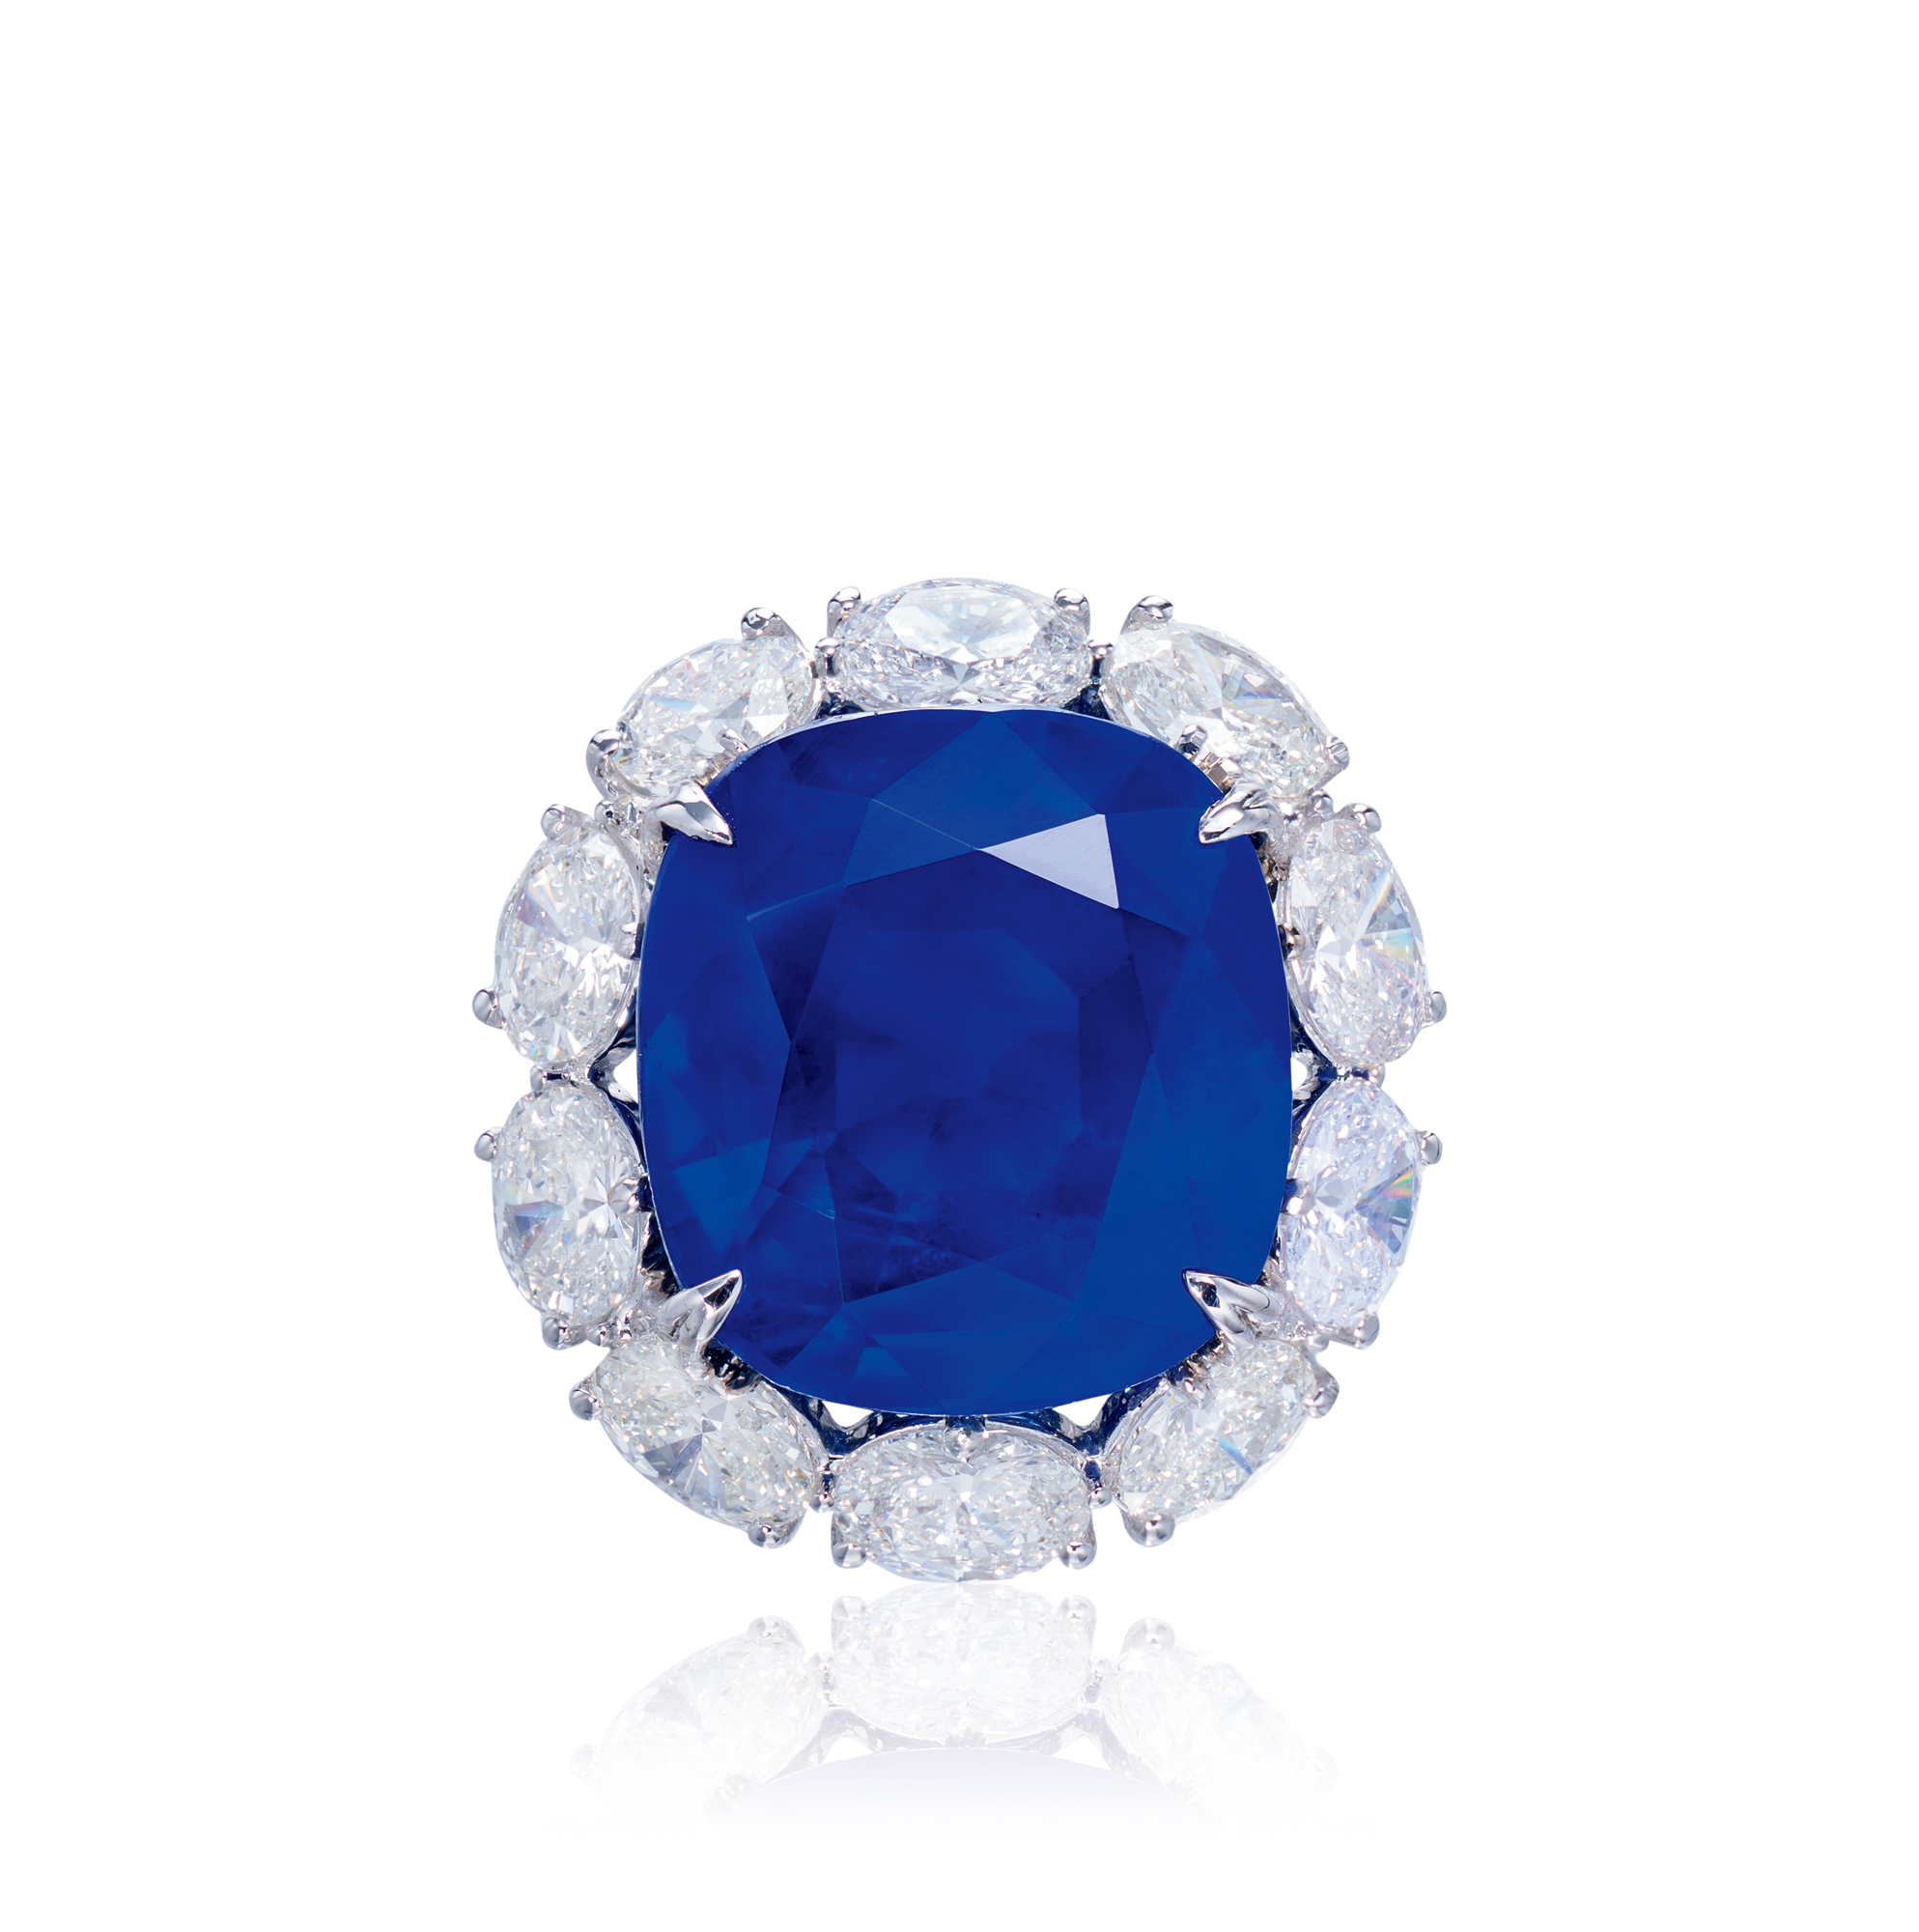 25克拉缅甸「皇家蓝」蓝宝石配钻石戒指,未经加热